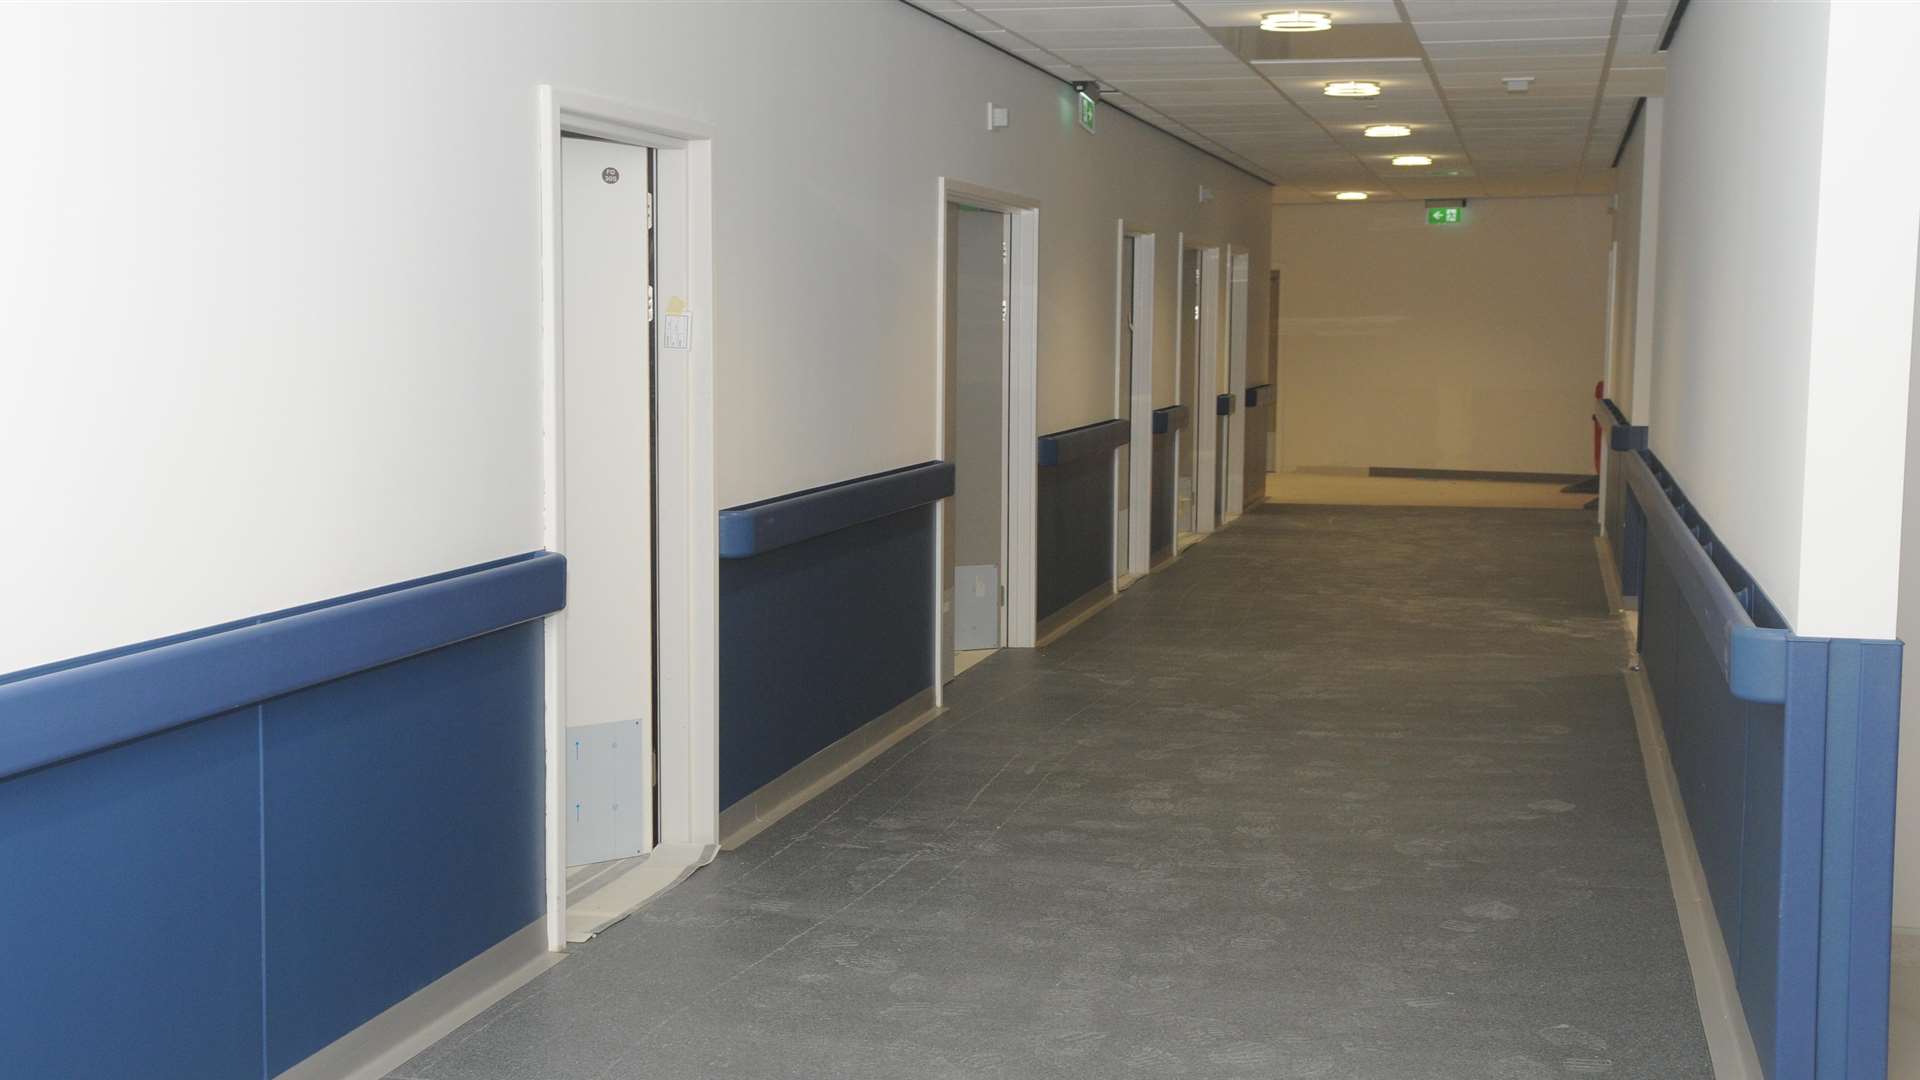 Inside the new Dover hospital